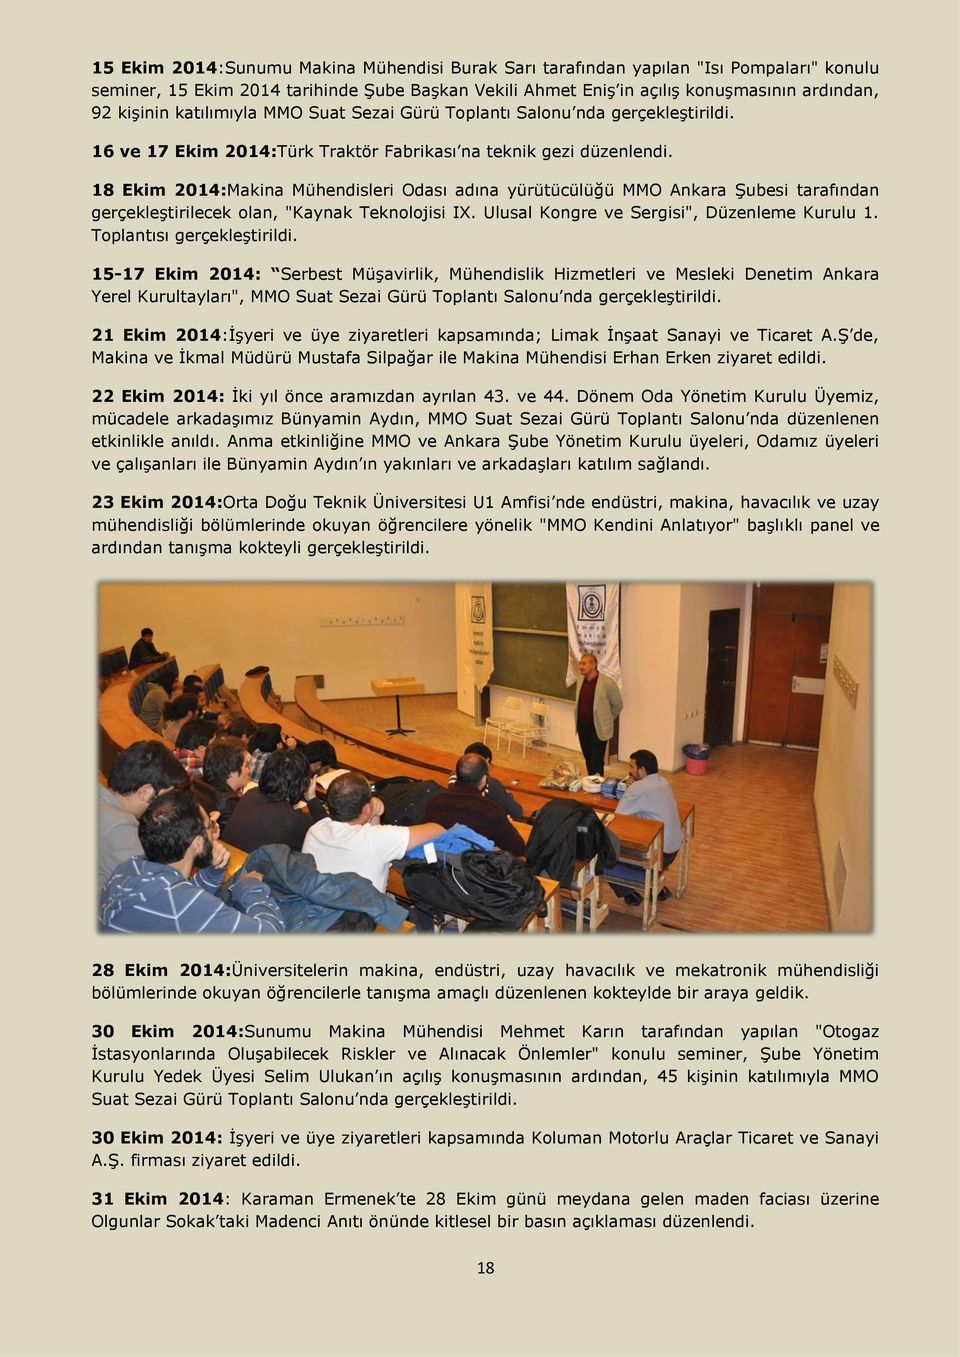 18 Ekim 2014:Makina Mühendisleri Odası adına yürütücülüğü MMO Ankara Şubesi tarafından gerçekleştirilecek olan, "Kaynak Teknolojisi IX. Ulusal Kongre ve Sergisi", Düzenleme Kurulu 1.